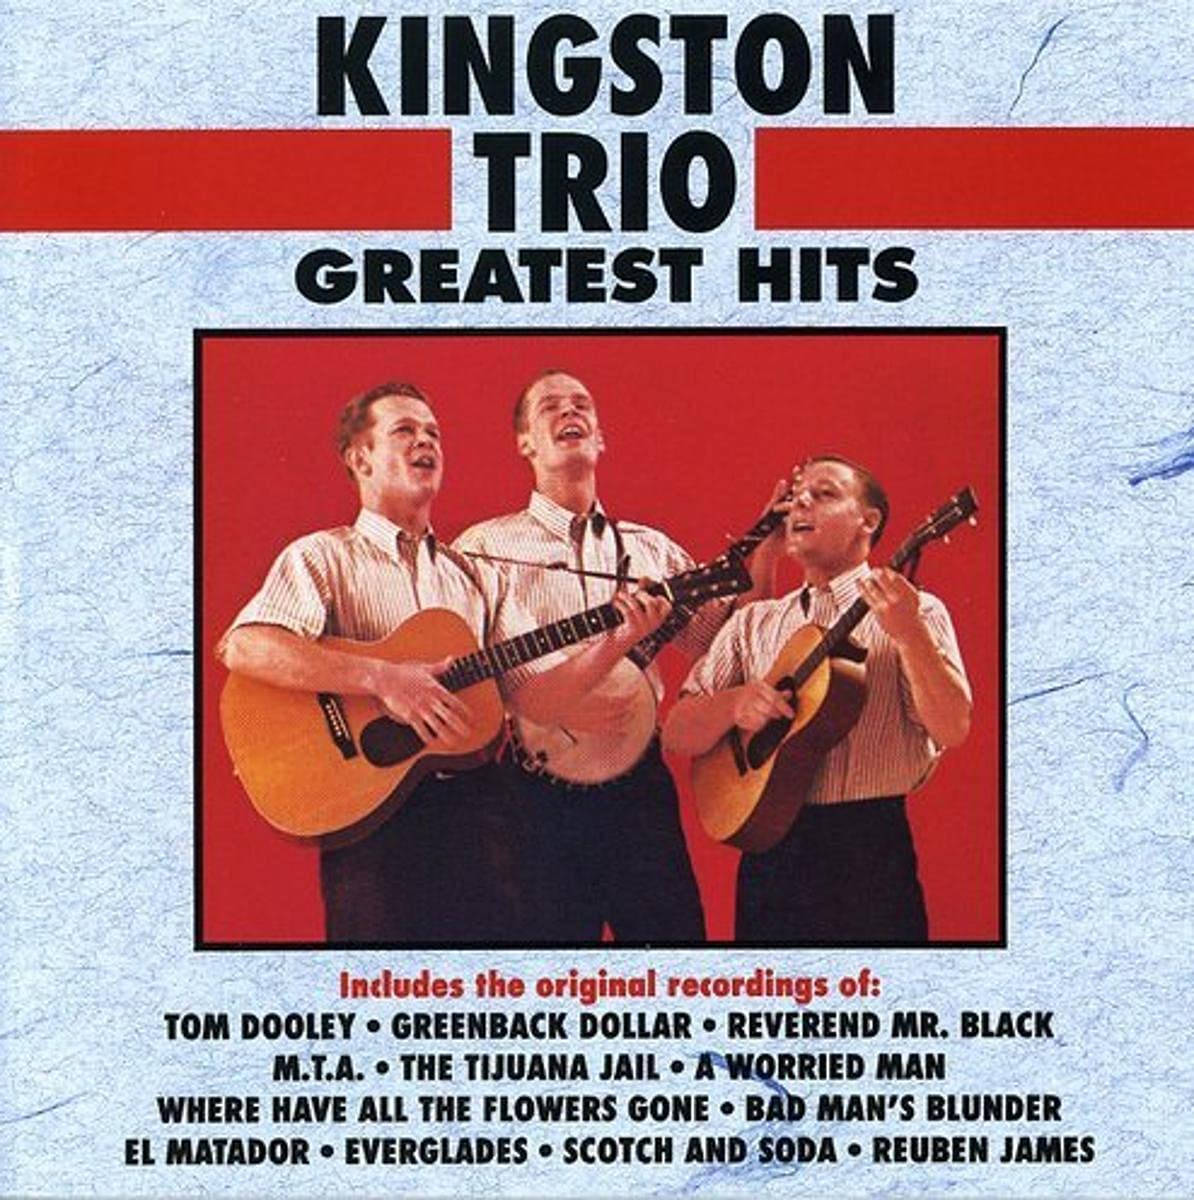 Kingston Trio største hits album dække som tapet på computeren. Wallpaper